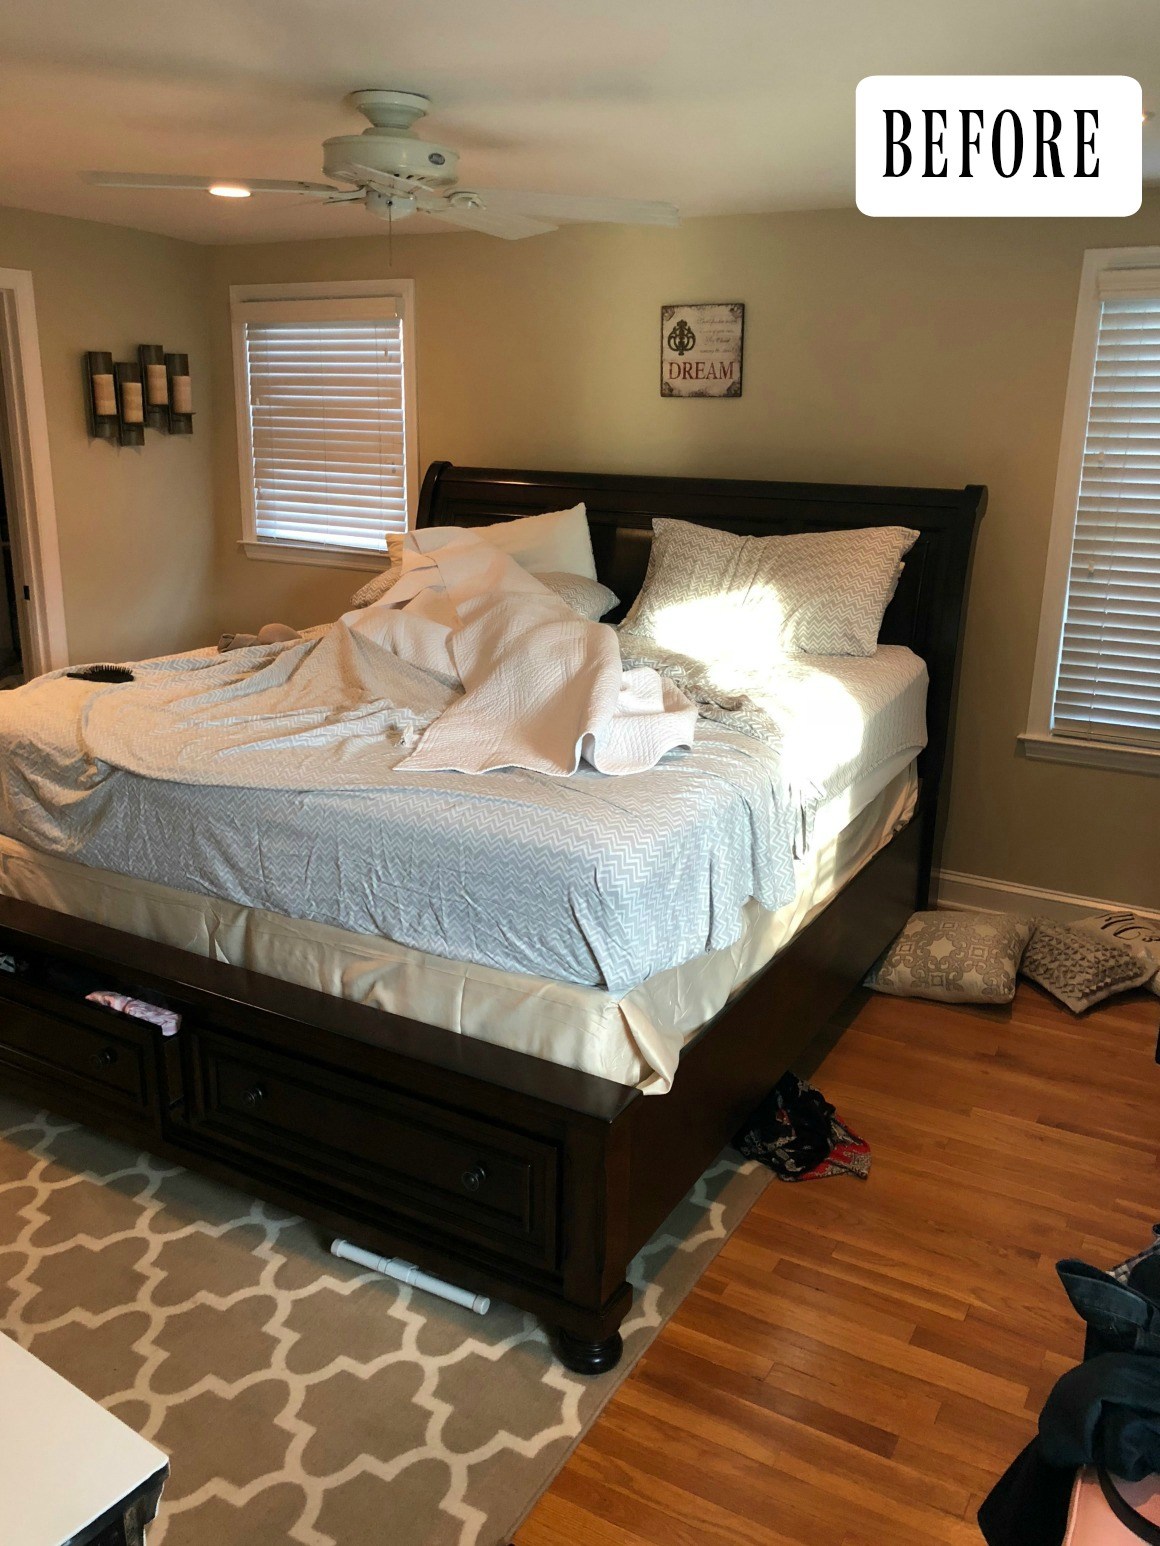 dark bedroom wallpaper,bedroom,bed,furniture,room,mattress